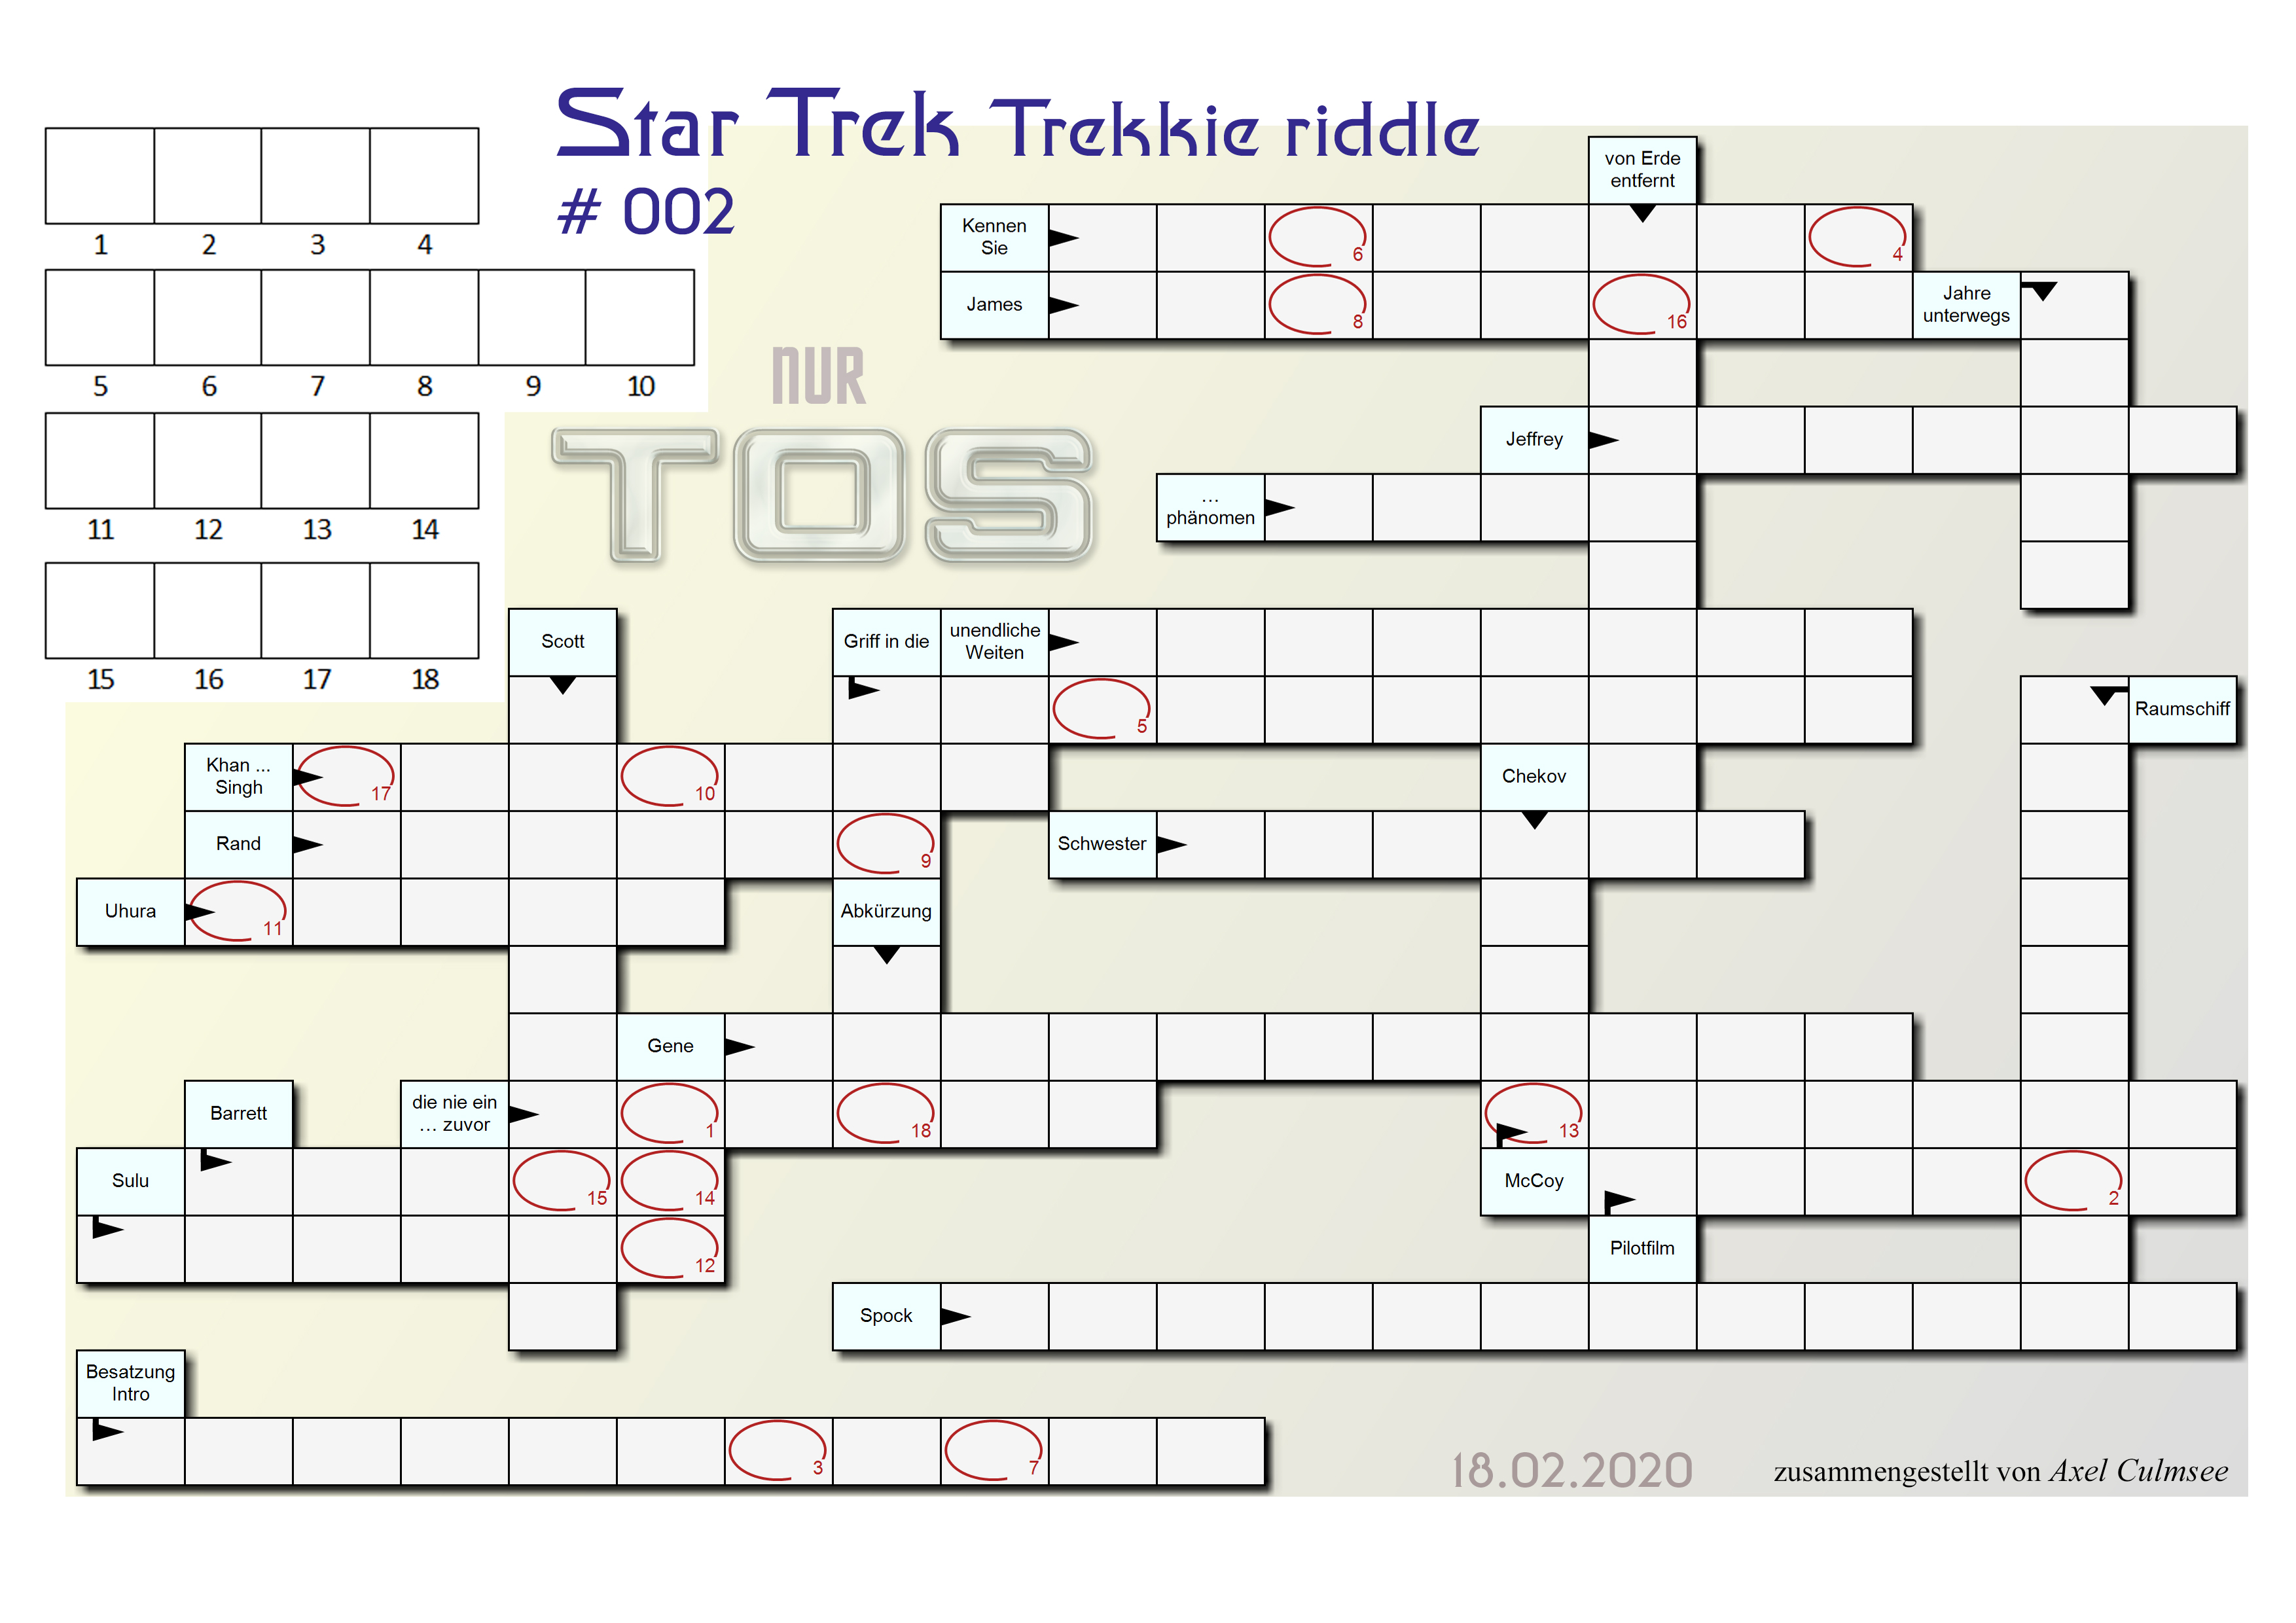 Star Trek Trekkie TOS riddle 002 deutsche Edition